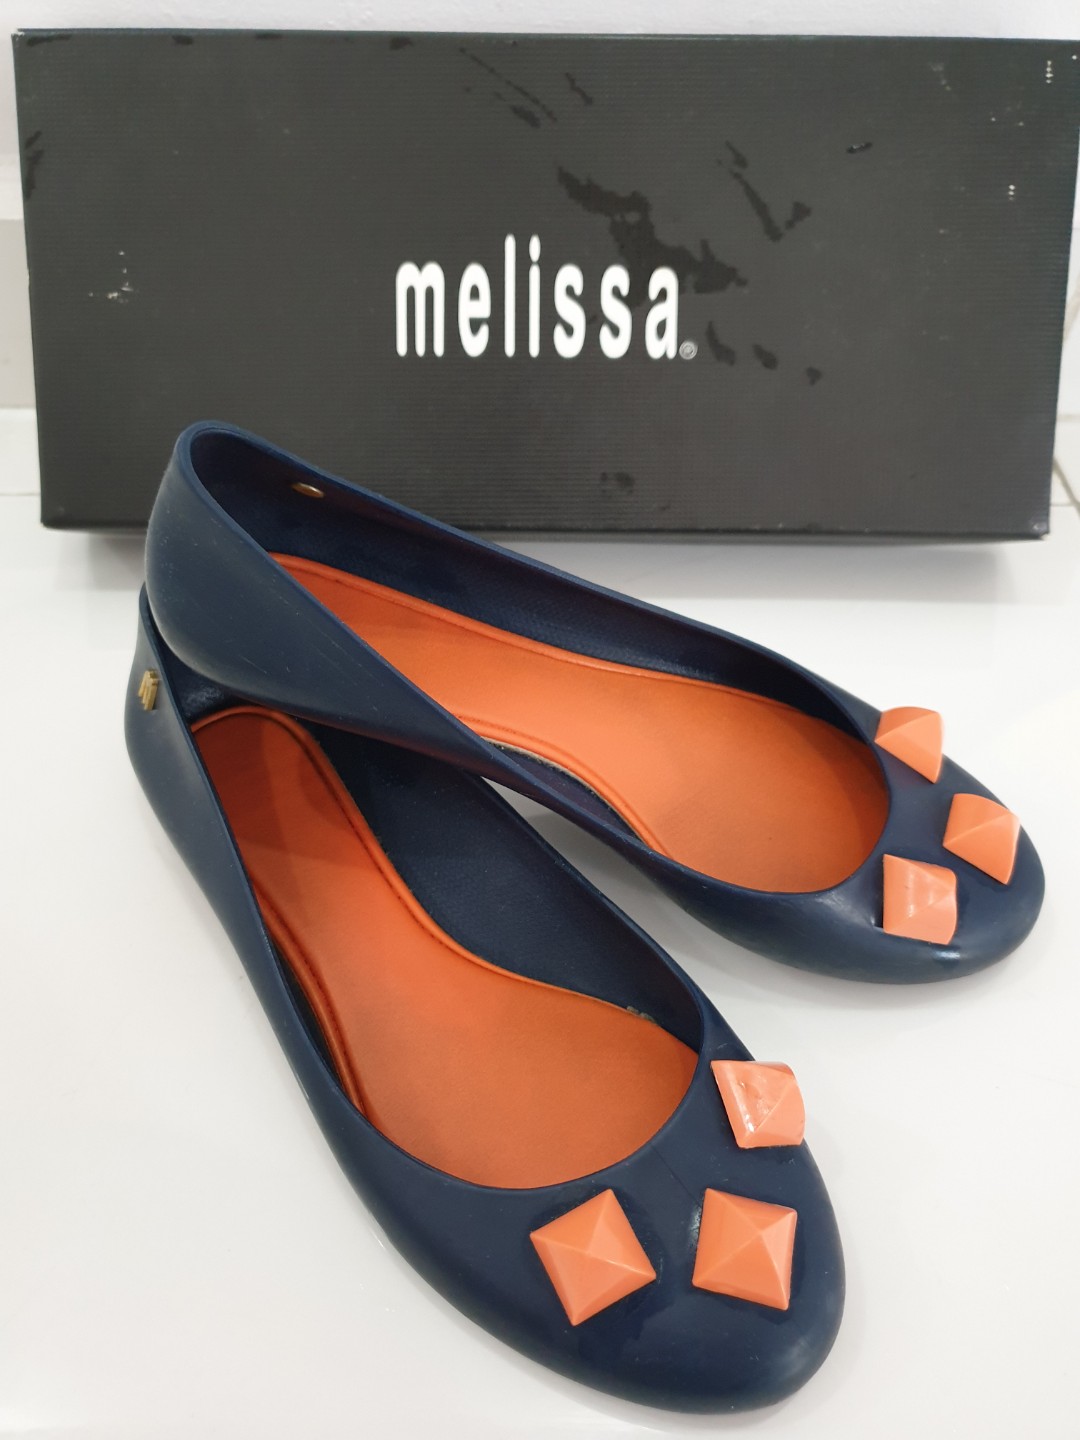 melissa shoes sales